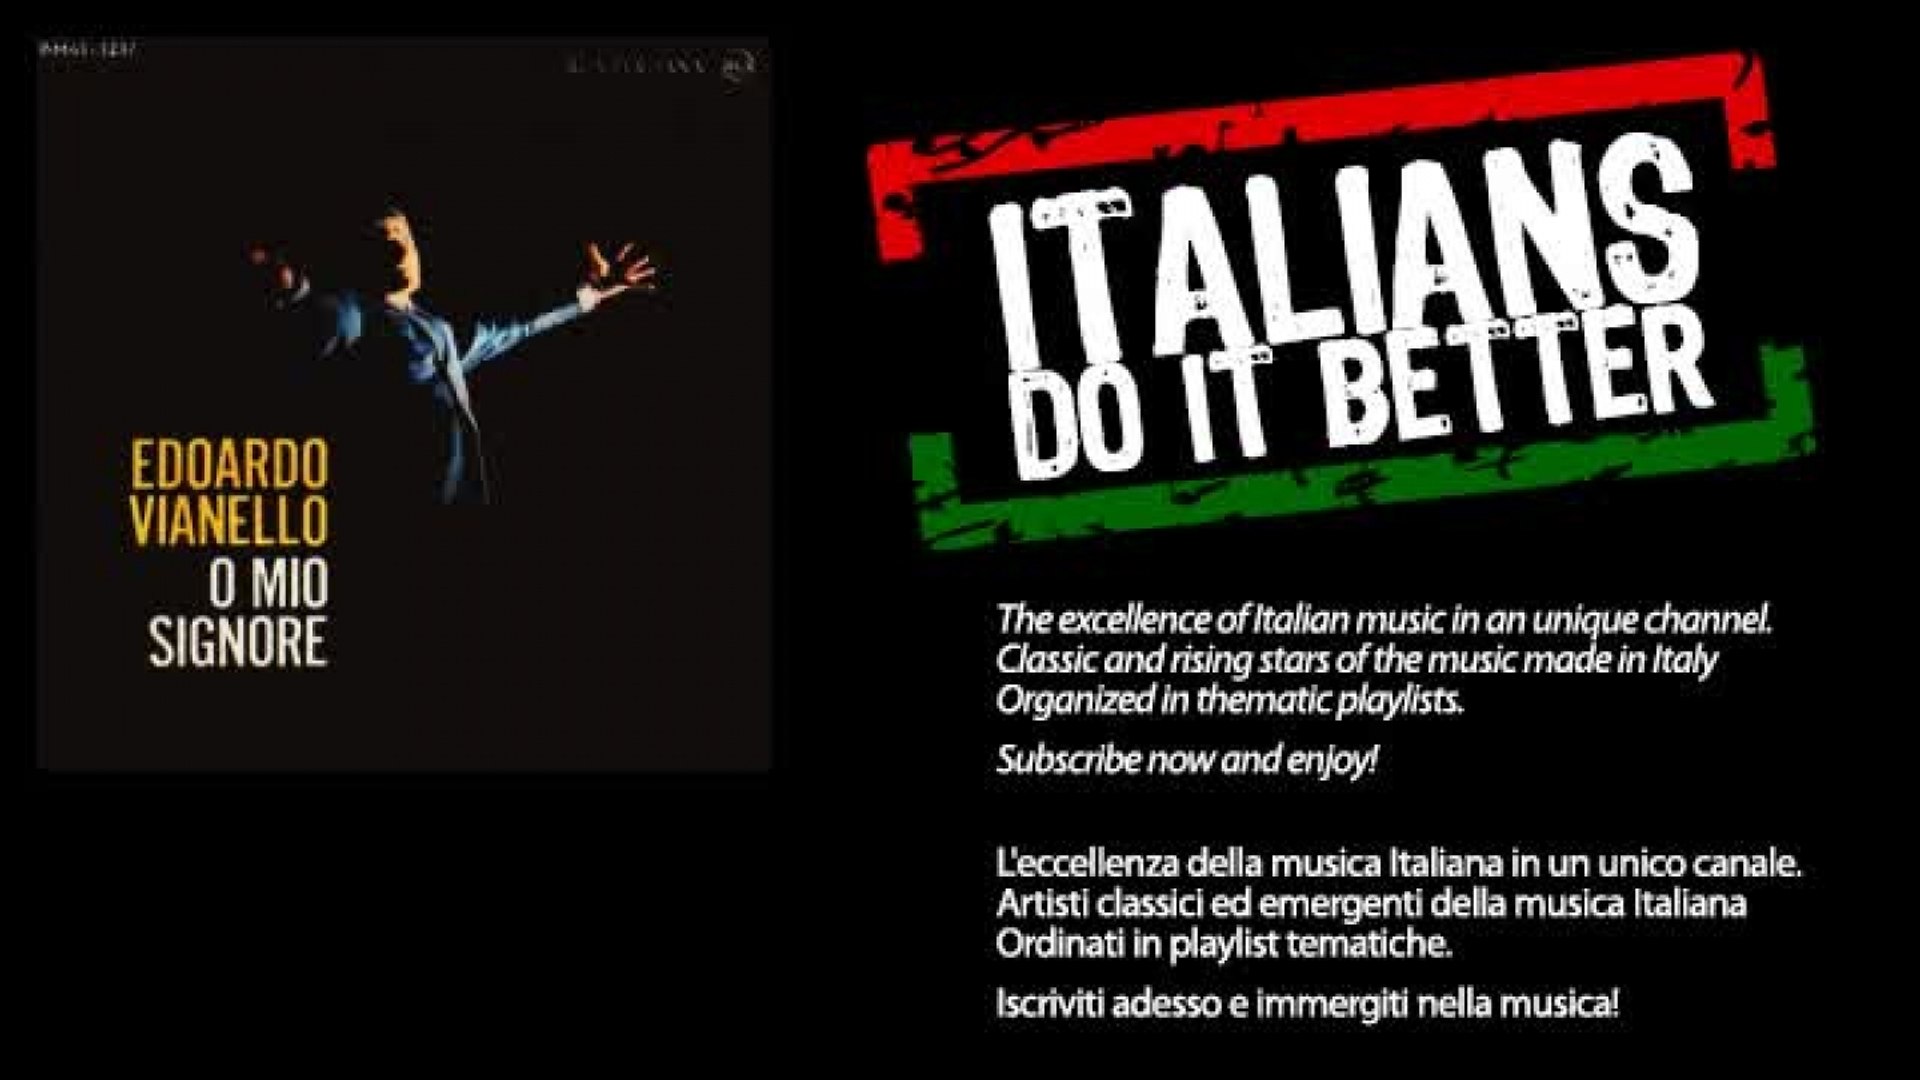 Edoardo Vianello - O Mio Siniore - Video Dailymotion